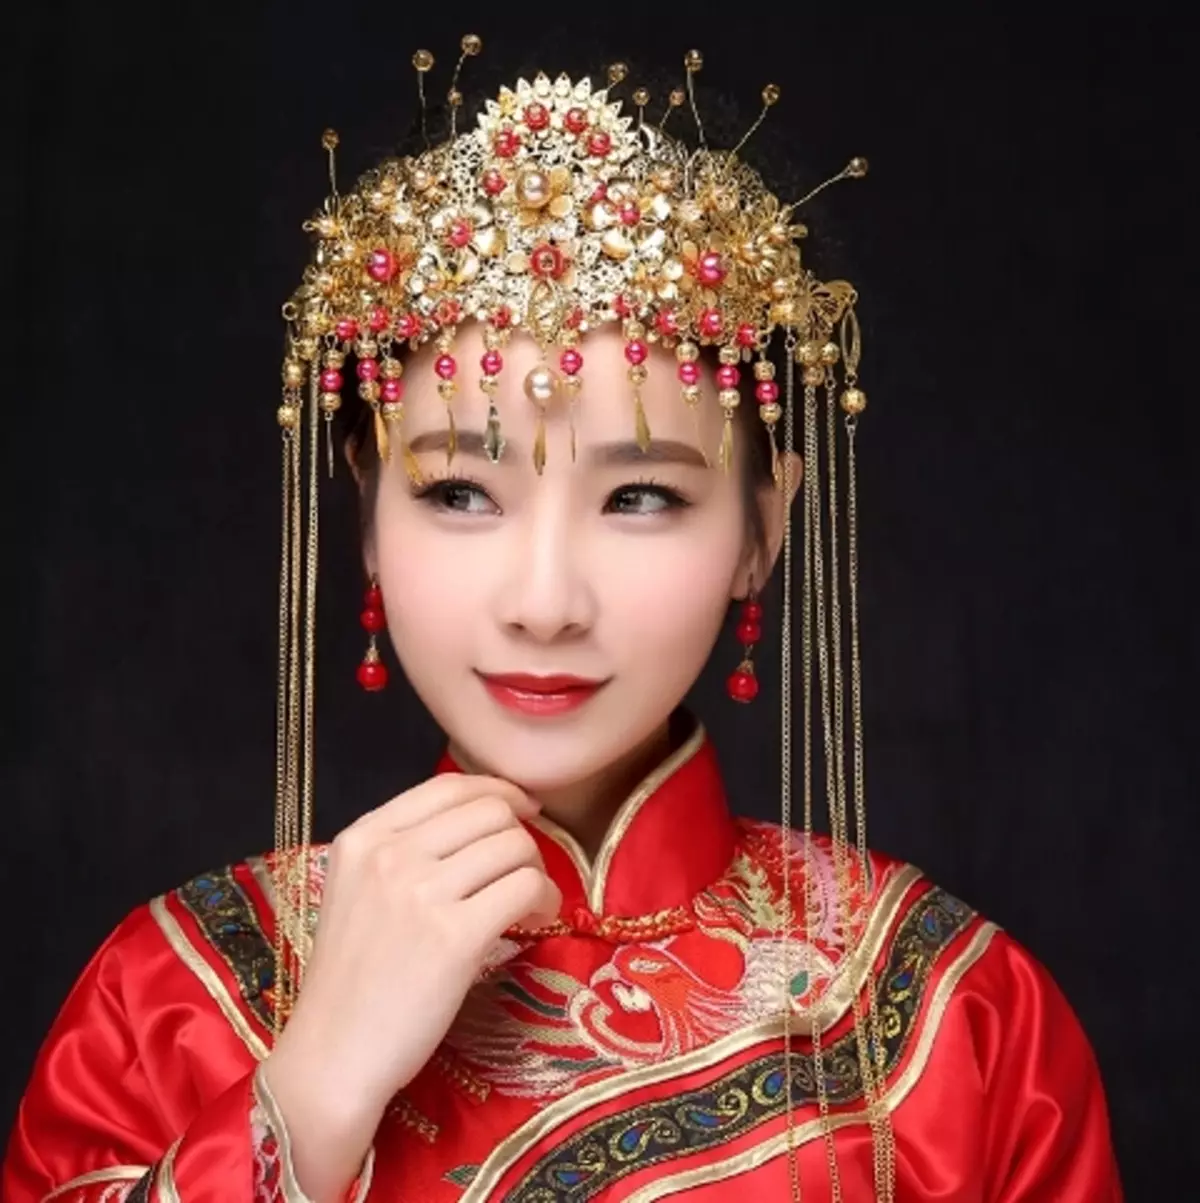 החליפה הלאומית הסינית (73 תמונות): תלבושת נקבה מסורתית של עמי סין, חליפה לילדה 1377_56